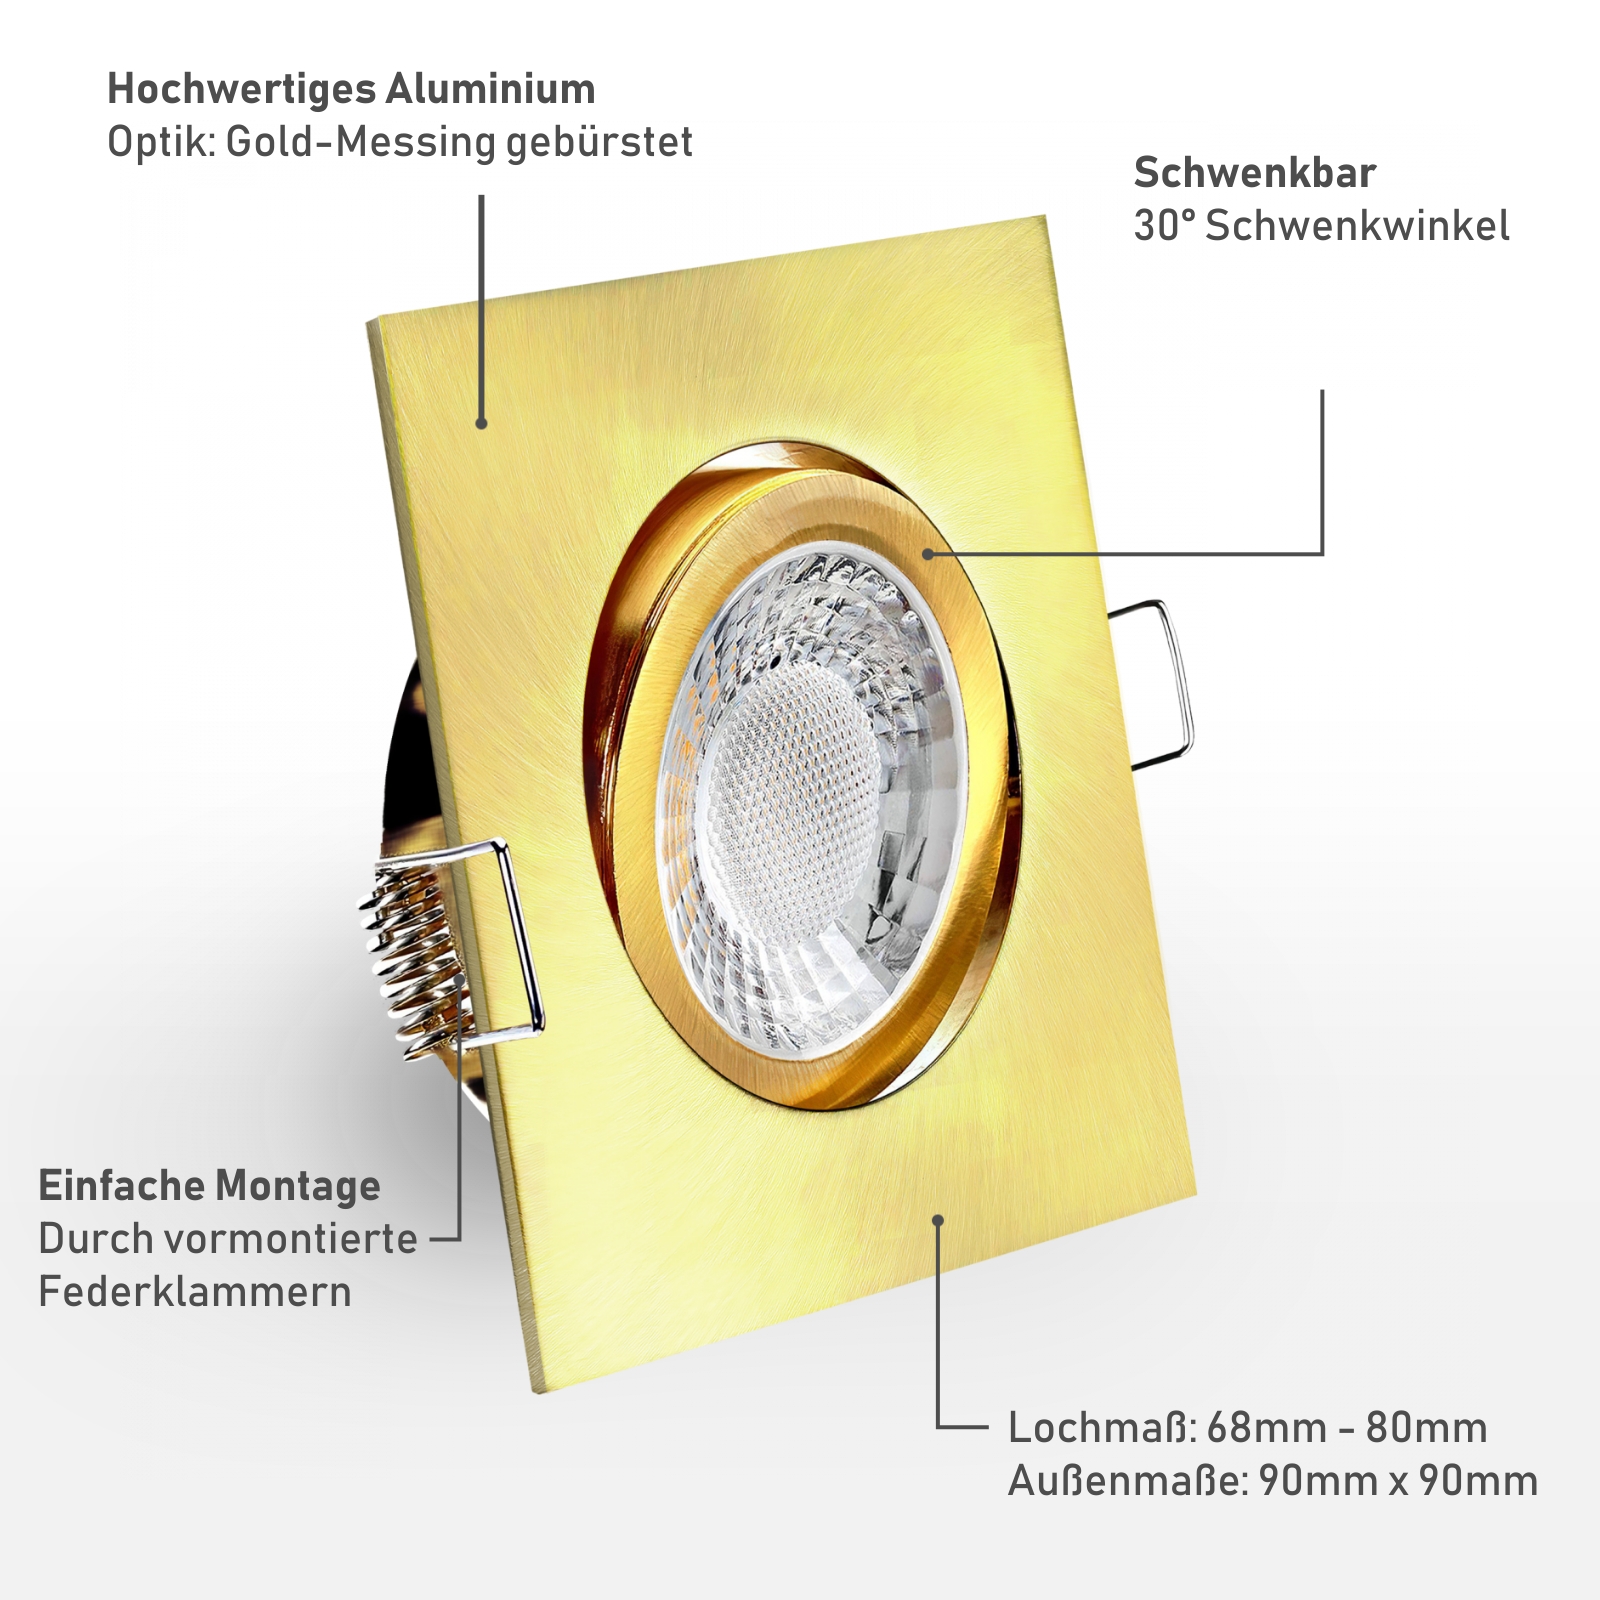 Einbaustrahler Material: Hochwertiges Aluminium Optik: Gold-Messing gebürstet Einfache Montage durch vormontierte Federklammern 30° schwenkbar